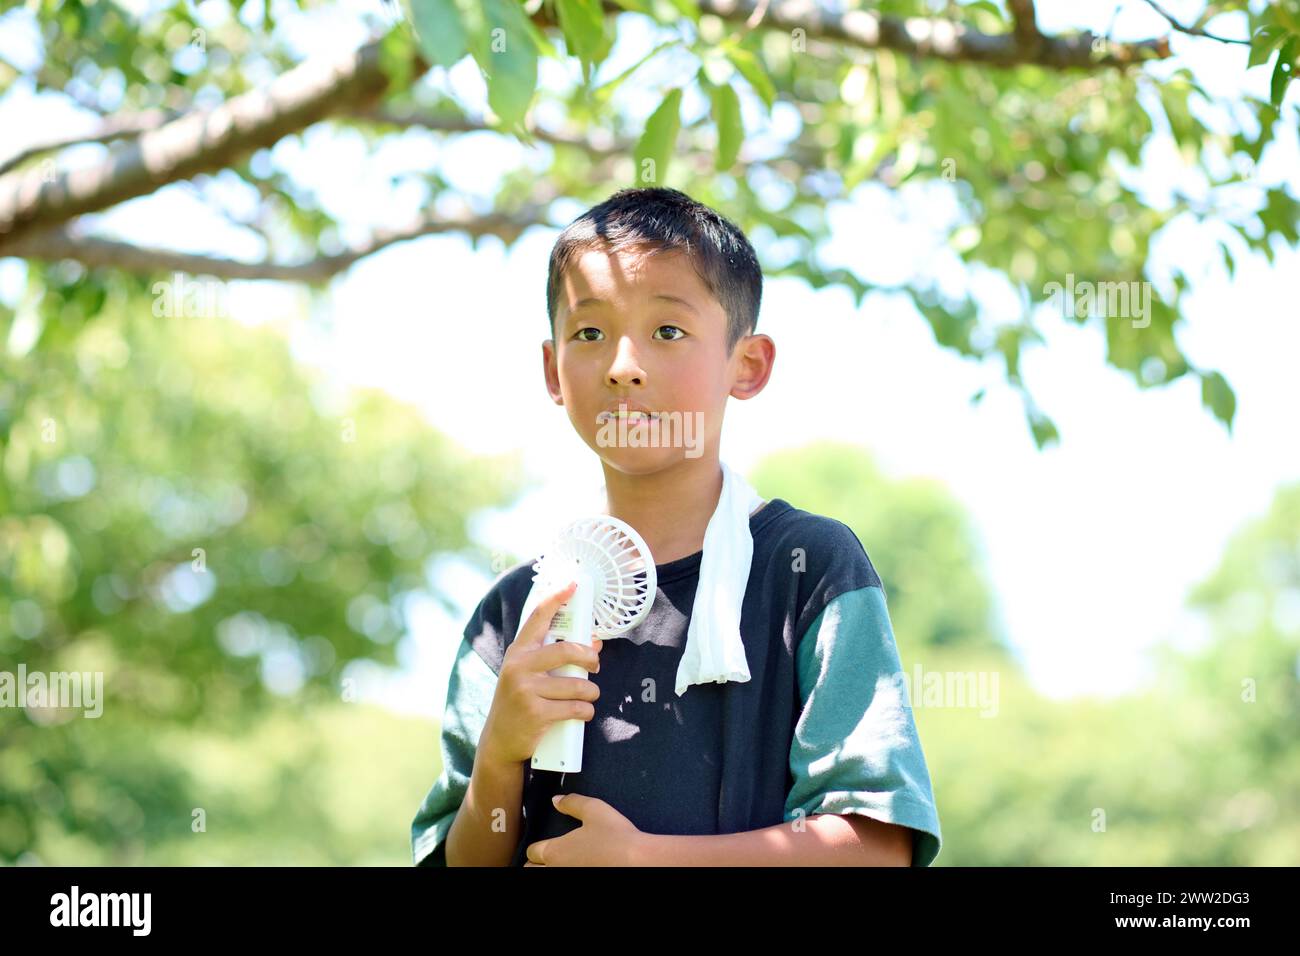 Ein kleiner Junge, der einen Ventilator in der Hand hält Stockfoto